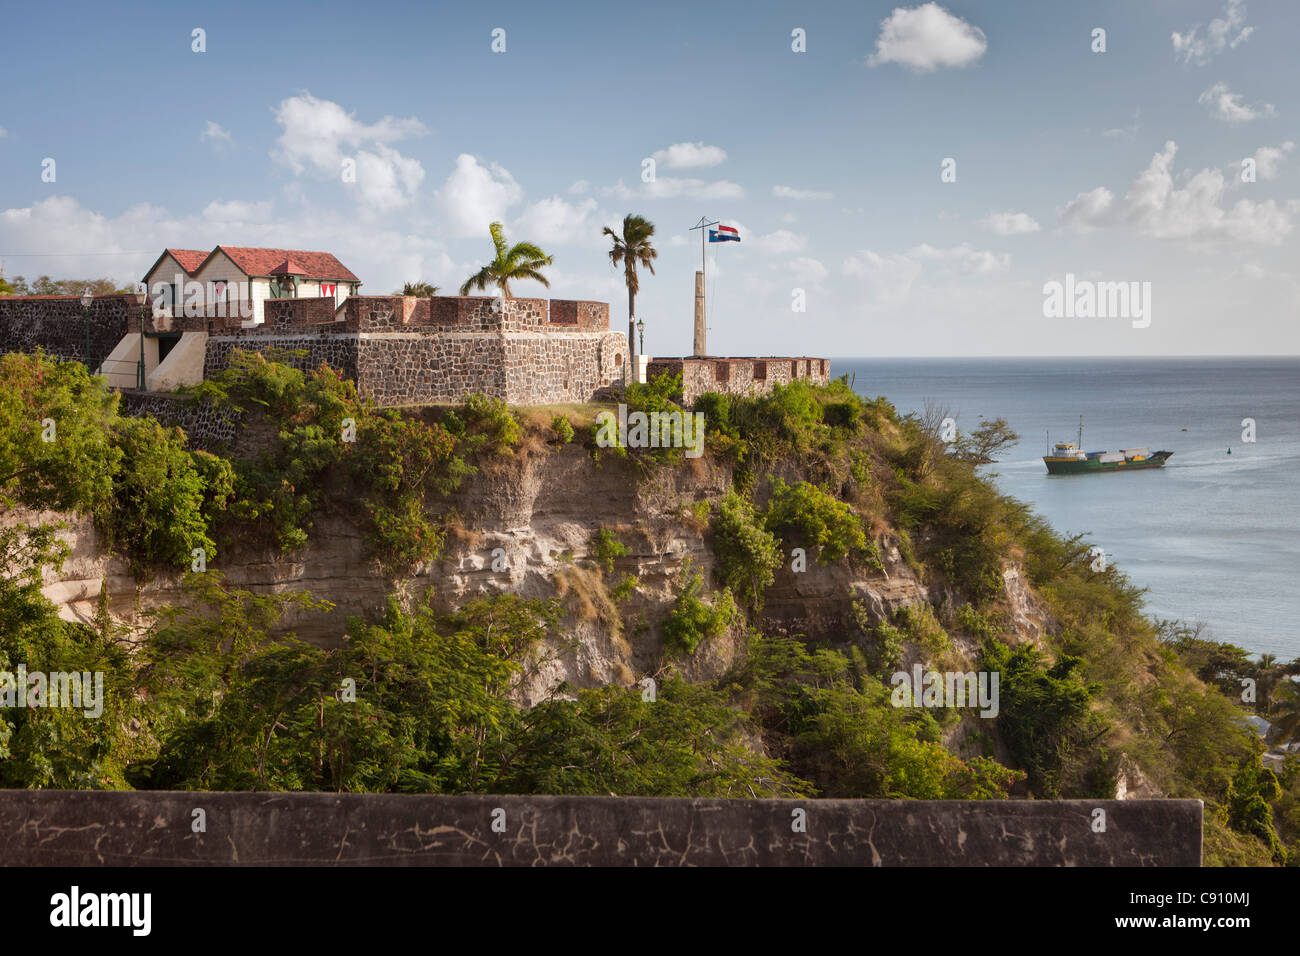 Les Pays-Bas, Oranjestad, Saint-Eustache, île des Antilles néerlandaises. Fort Oranje, construit en 1629. Banque D'Images